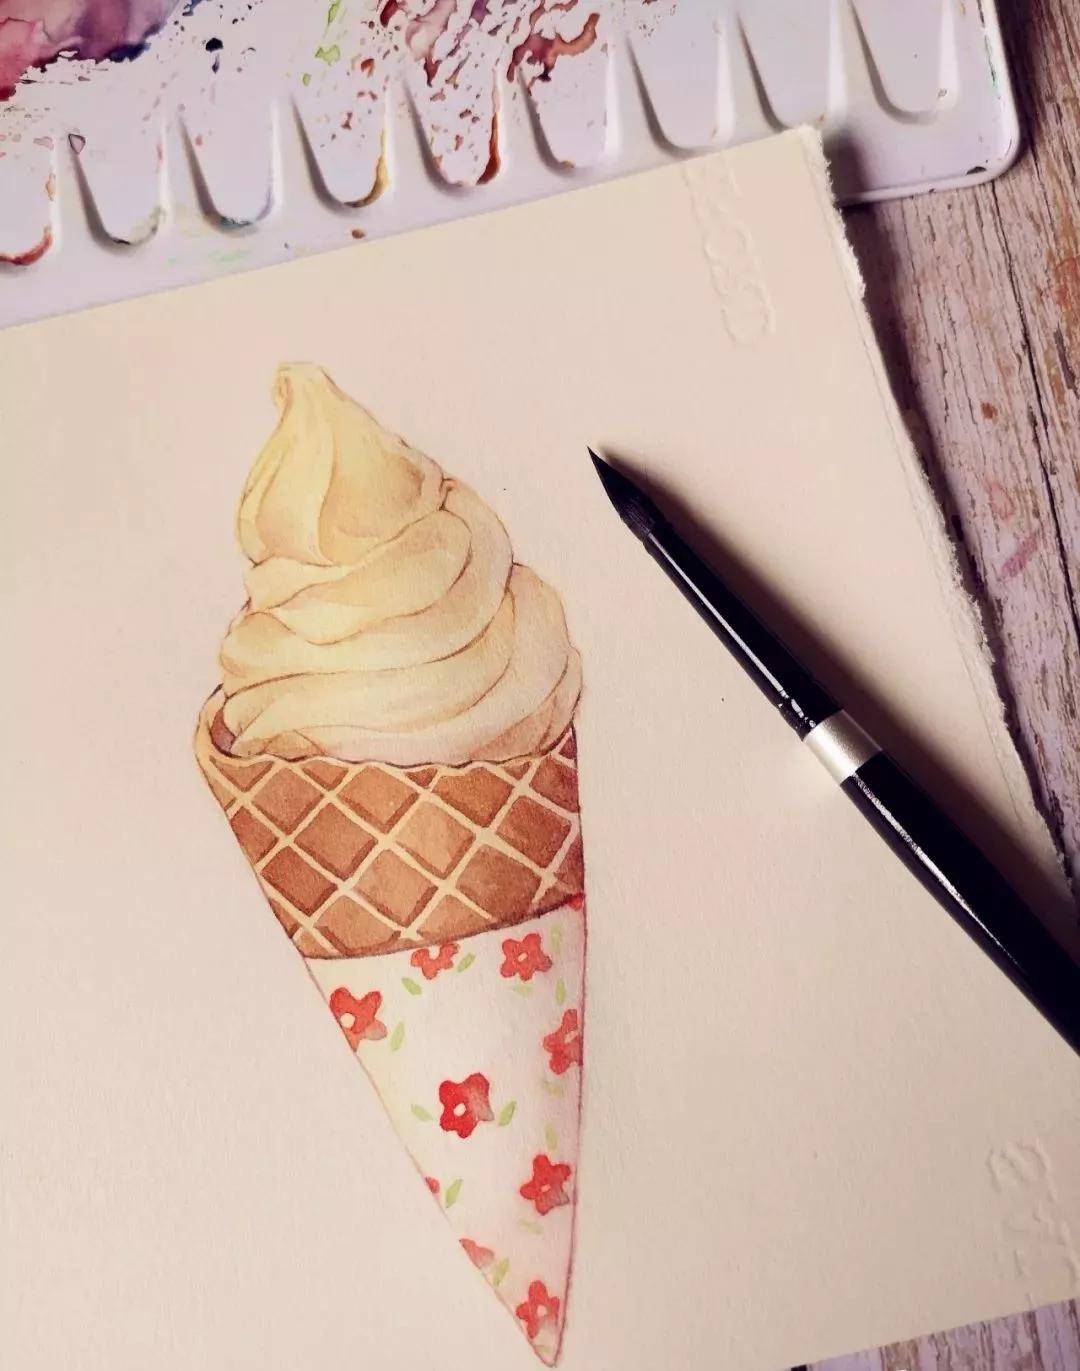 同年美术 | 炎炎夏日,一起来画甜筒冰激凌吧!